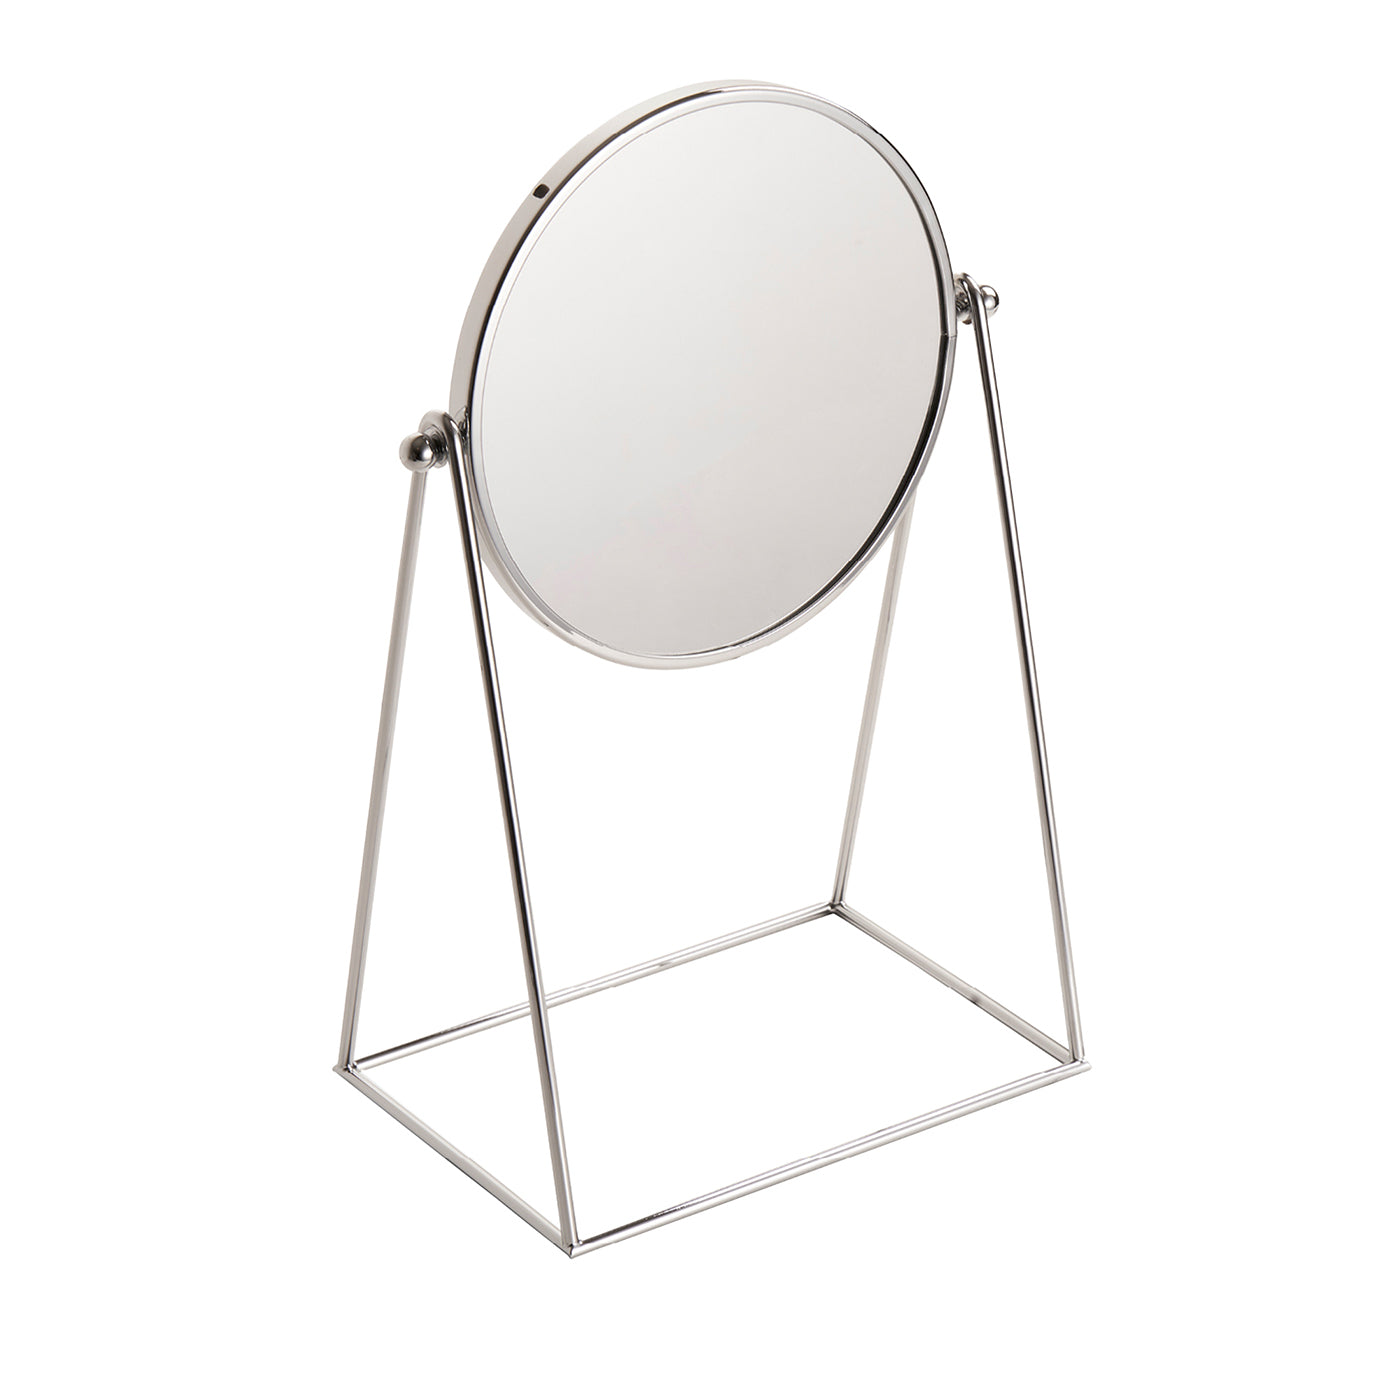  Specchio basculante Waltz  - Vista principale